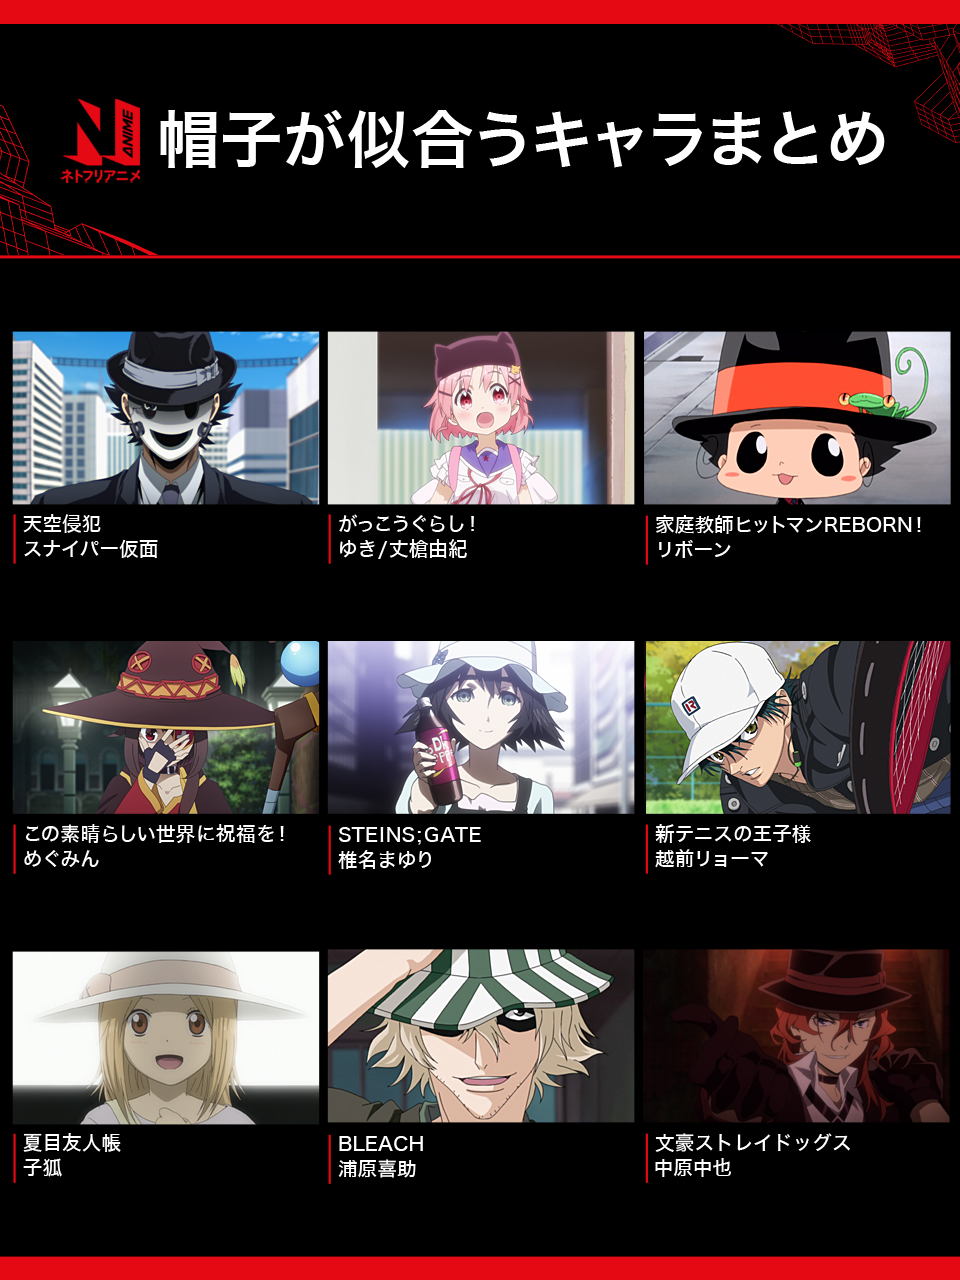 تويتر Netflix Japan Anime على تويتر ネトフリ で配信中のアニメから 帽子が似合うキャラクターを一部集めてみました 他にも帽子の似合う個性的なアニメキャラはたくさんいますね 皆さんの好きな帽子キャラは ネトフリアニメ 帽子の日 T Co